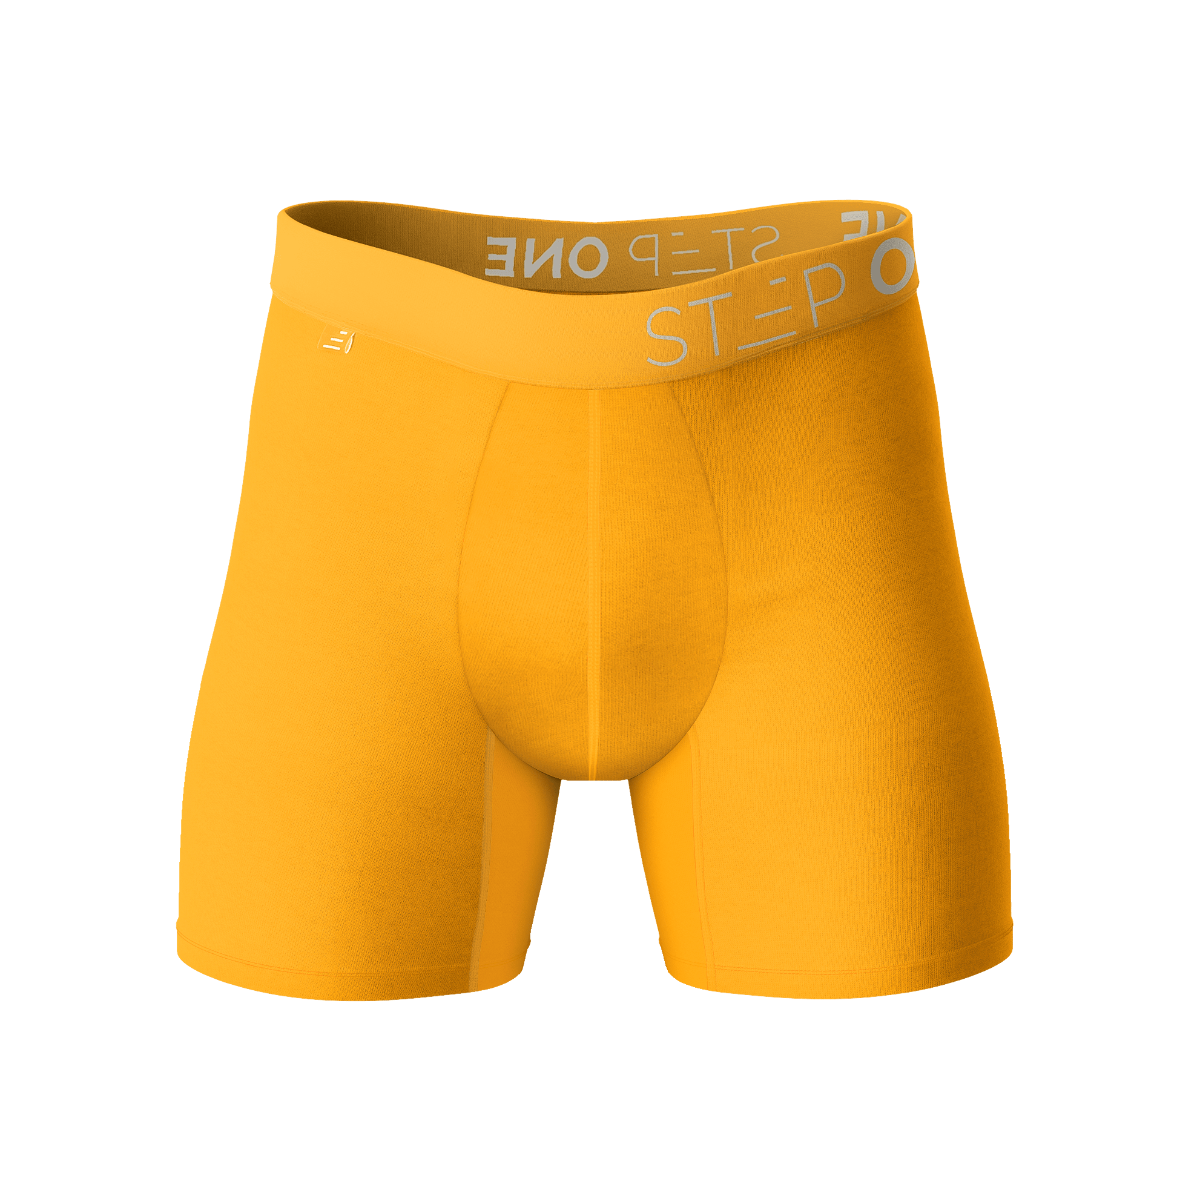 Mens Bamboo Underwear - Yellow Underwear